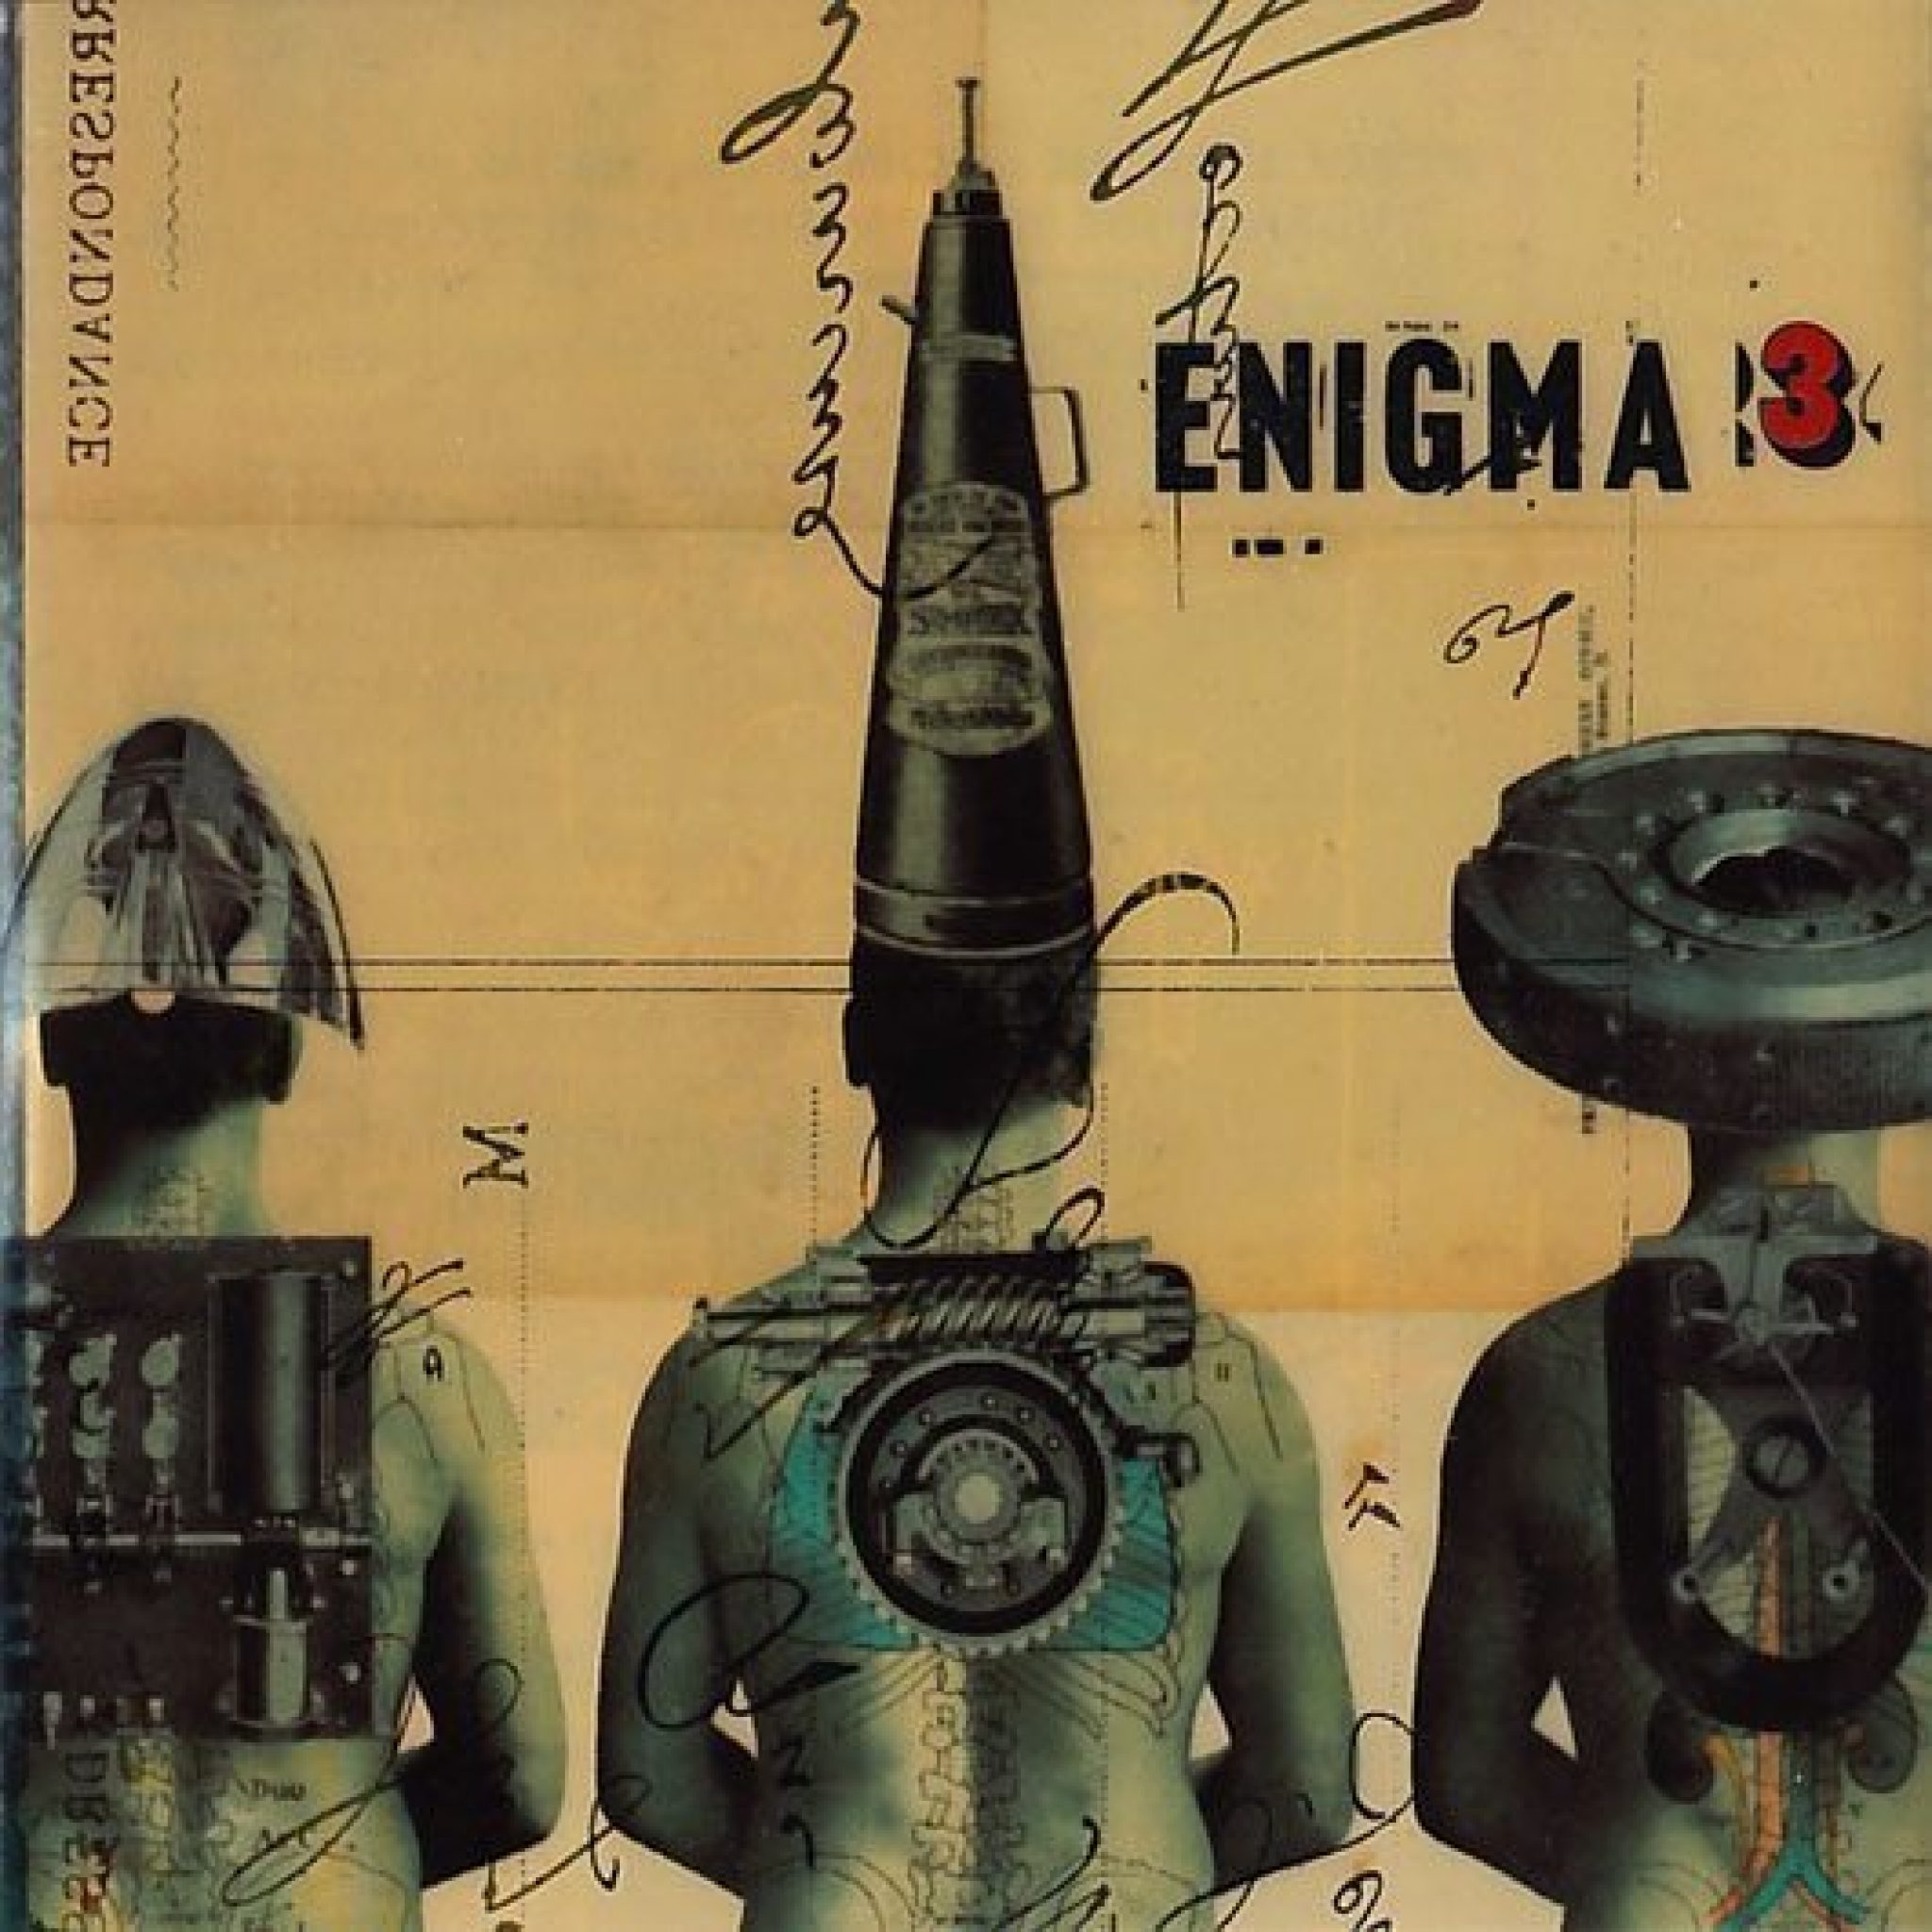 Le roi est mort. Обложка Enigma le roi est mort Vive le roi. Enigma le roi est mort Vive le roi 1996 альбом. Enigma Cover обложка. Enigma 3 альбом.